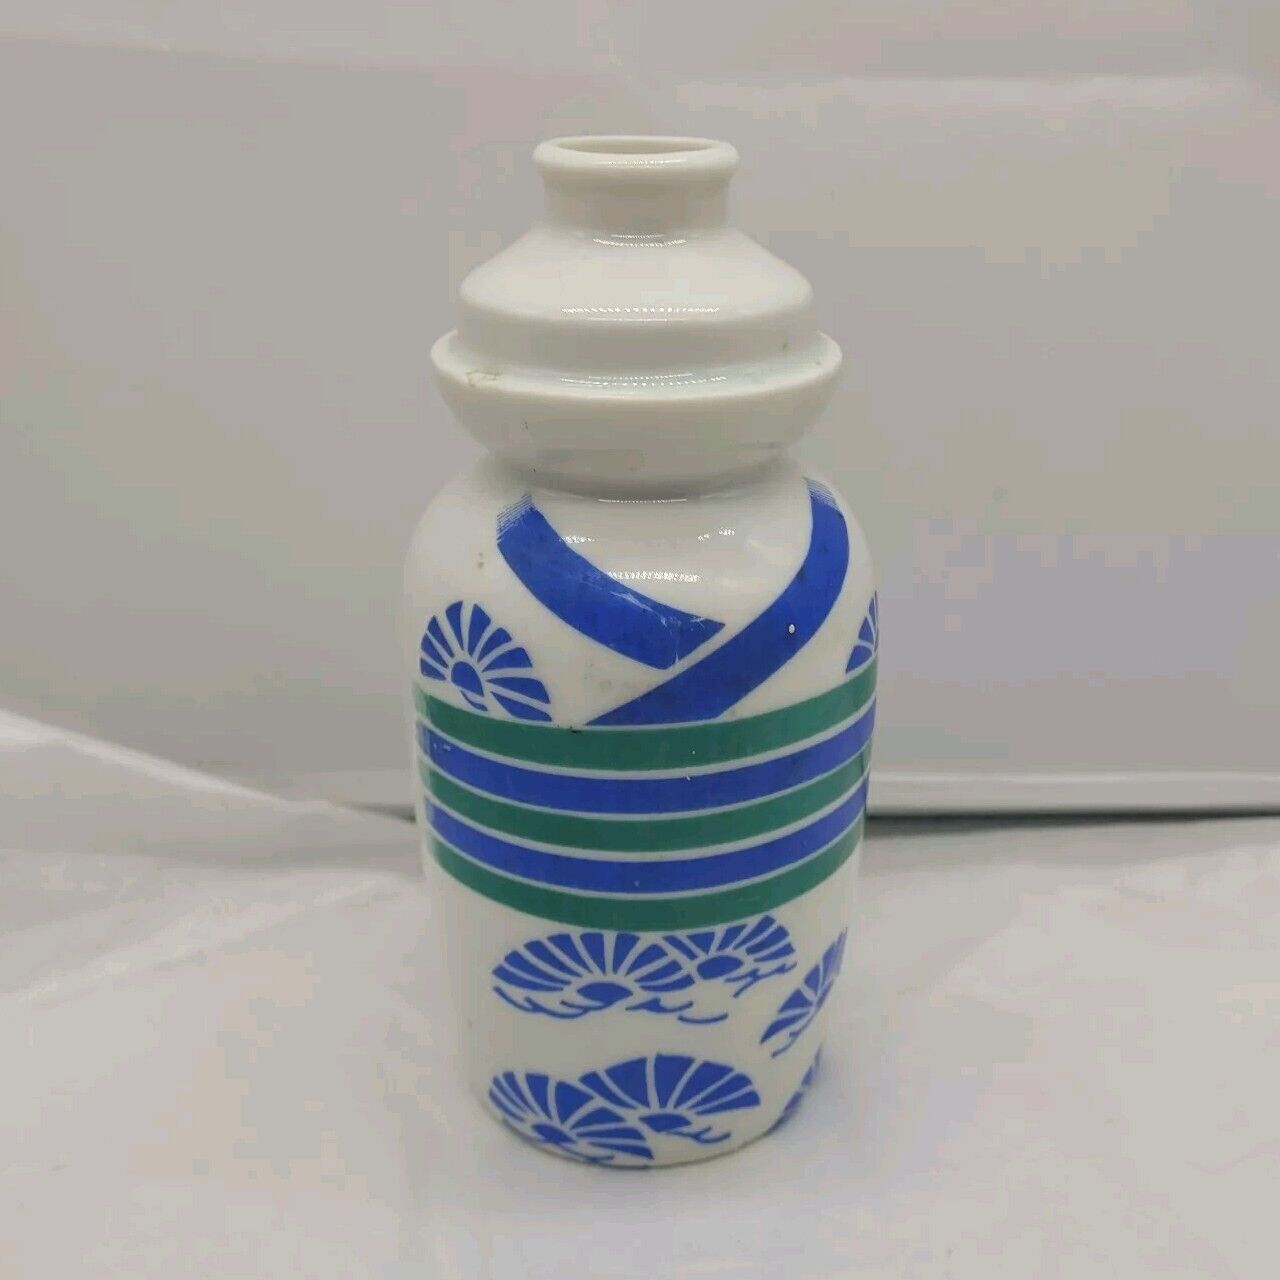 VTG Kamotsuru Porcelain Japanese Sake Jug Bottle Without Lid Made in Japan